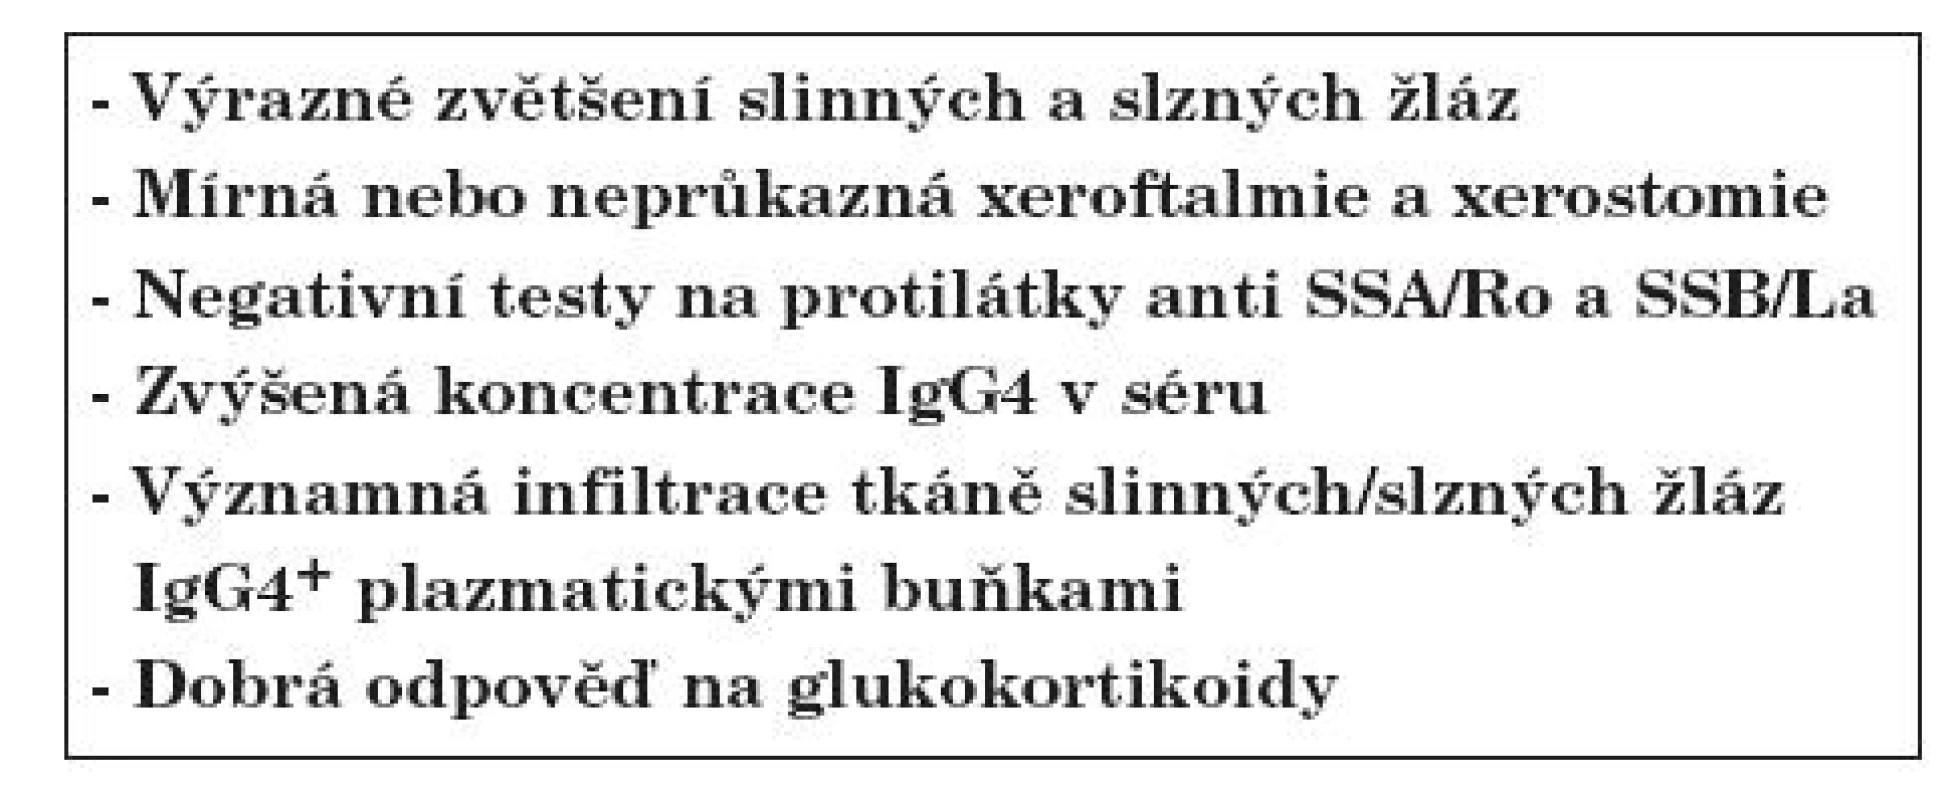 Přehled klasifikačních kritérií Mikuliczovy choroby; upraveno podle Masaki Y. et al. (6).